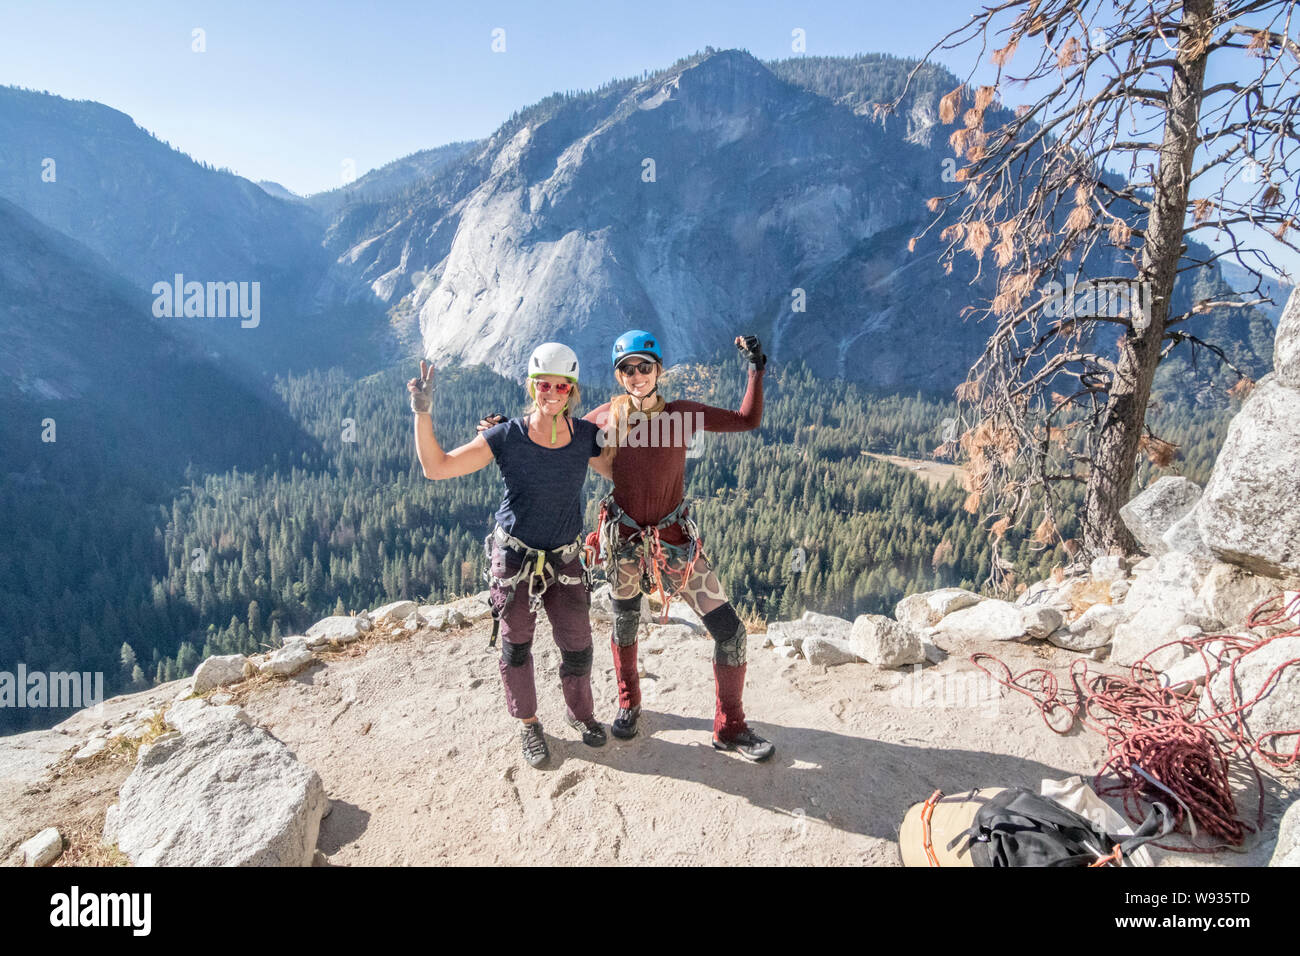 Deux femmes posent en vainqueur après avoir terminé leur objectif d'escalade Banque D'Images